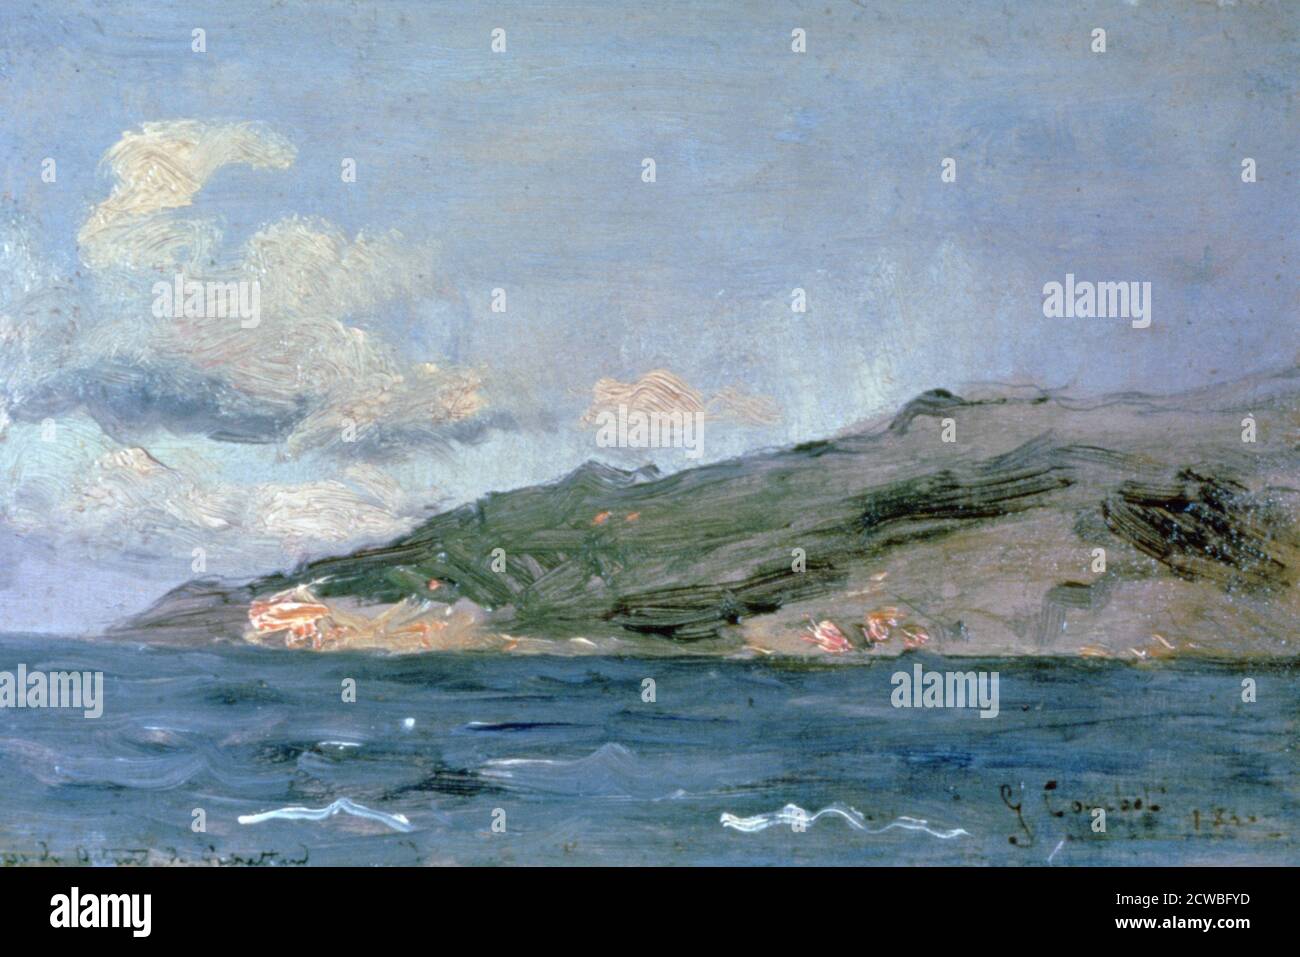 Entrada al Estrecho de Gibraltar', 1848. Artista: Gustave Courbet. Jean Desire Gustave Courbet (1819-1877) fue un pintor francés que dirigió el movimiento del realismo en la pintura francesa del siglo XIX. Foto de stock